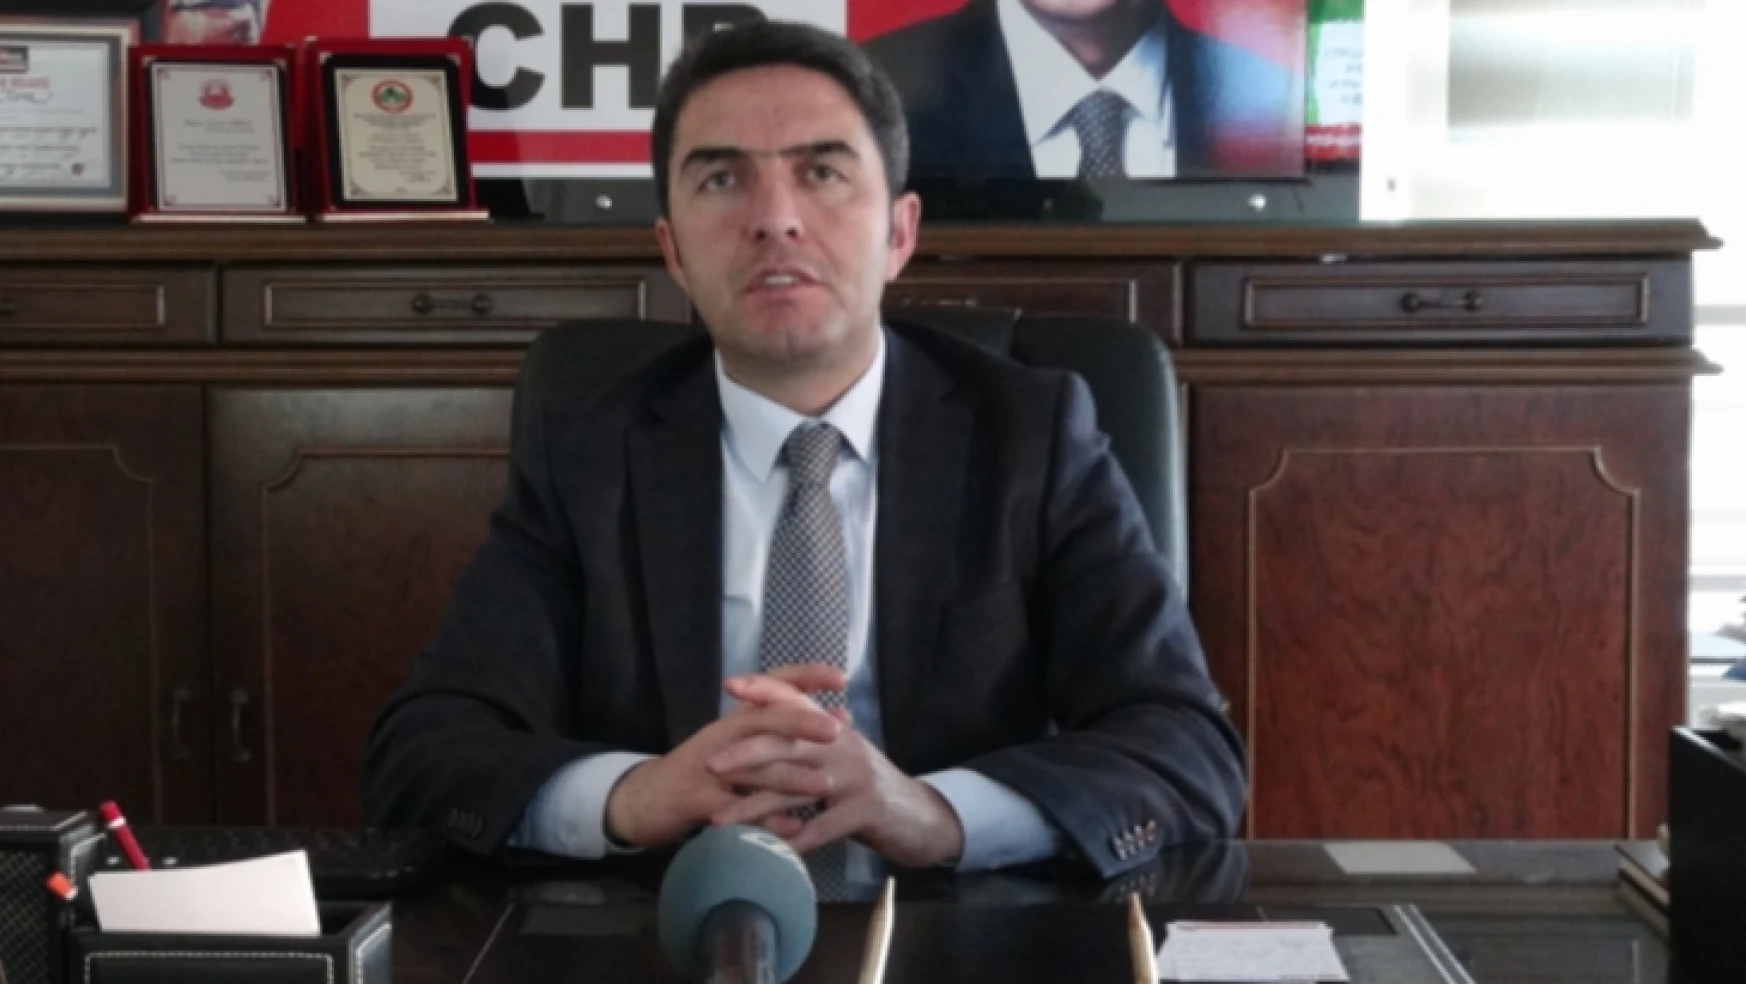 CHP İl Başkanı Kiraz çocuk istismarıyla ilgili yasayı eleştirdi